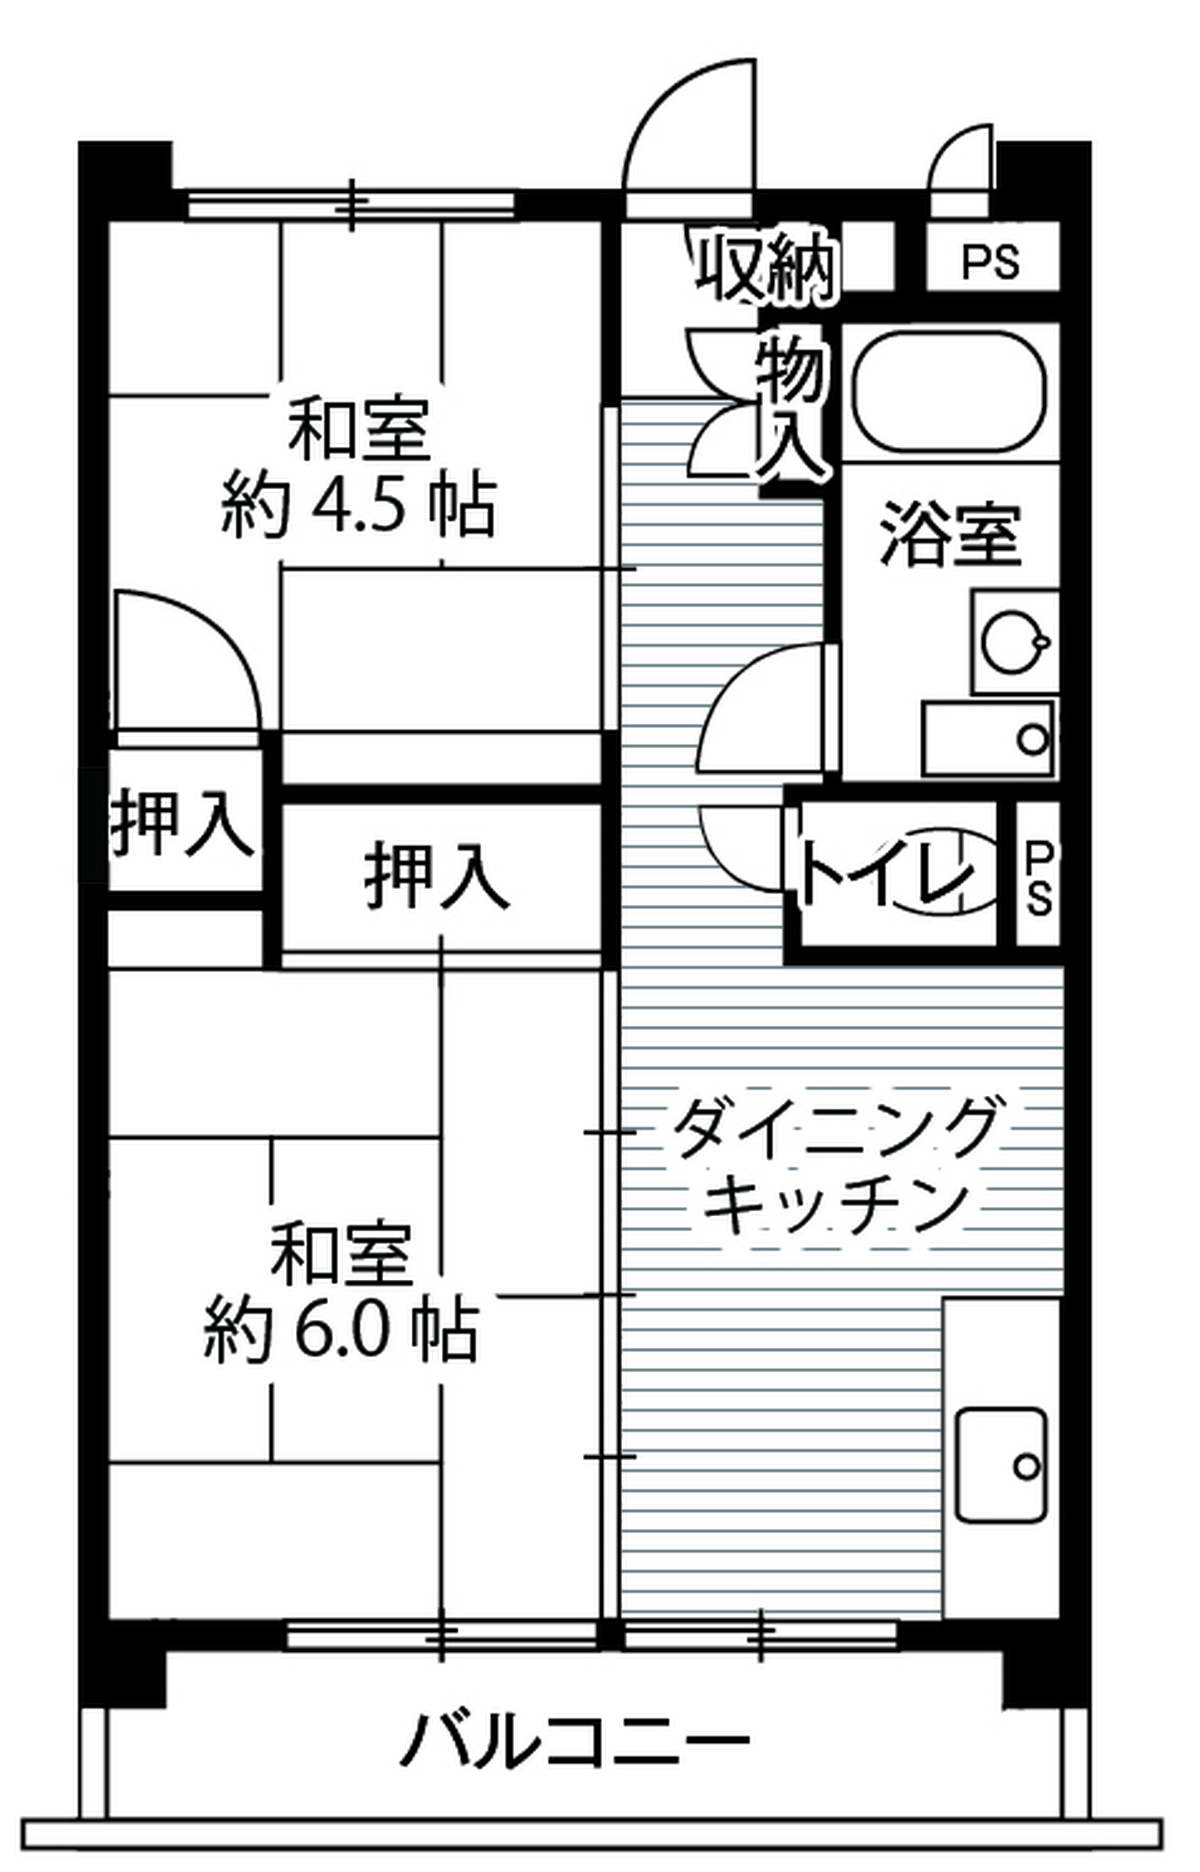 Sơ đồ phòng 2DK của Village House Mukoudai Tower ở Nishitokyo-shi